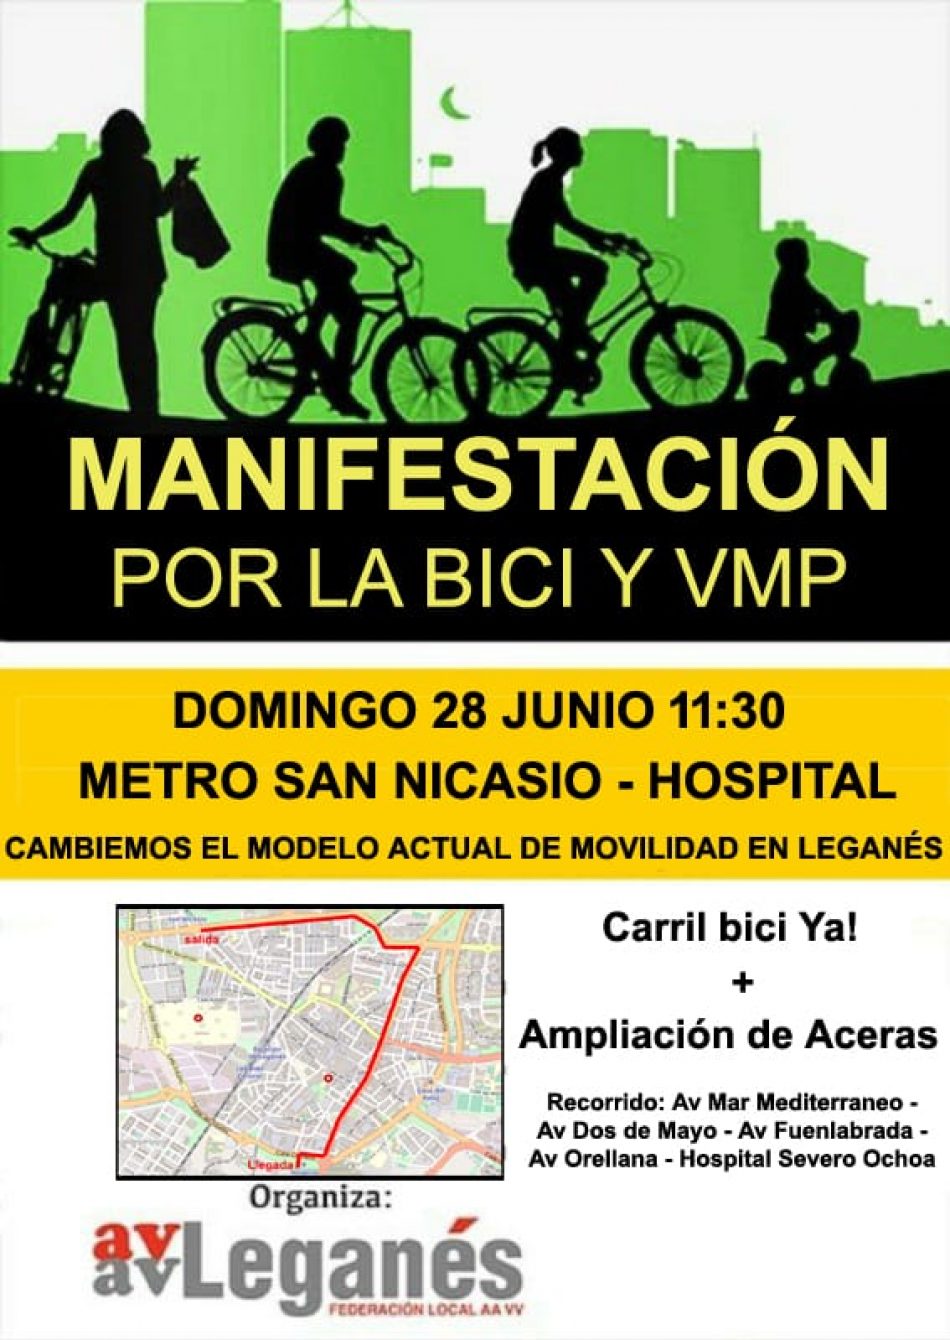 Domingo 28-J: Marcha en Leganés para reclamar carriles bici y aceras más anchas